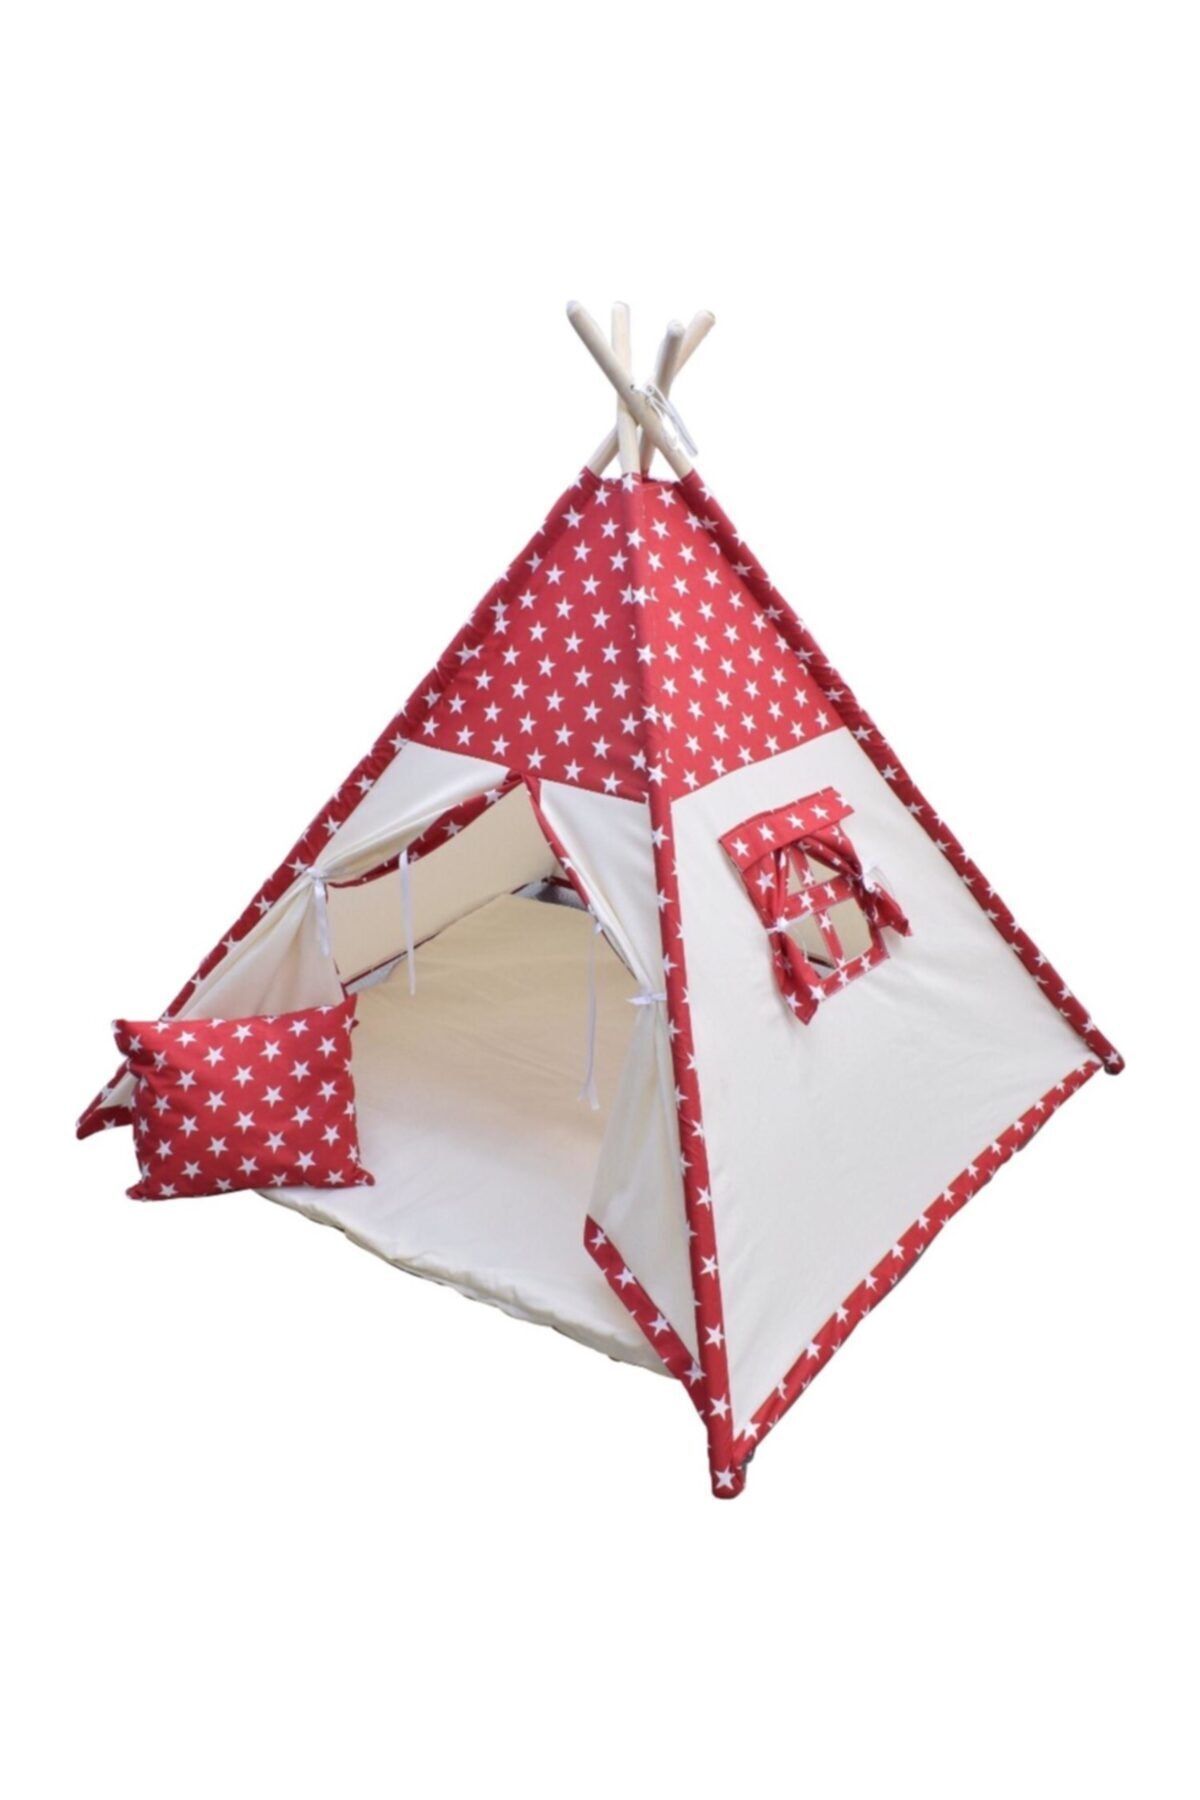 miniks Çocuk Çadırı Devrileyen Toplanmayan Çocuk Oyun Çadırı Kızıldereli Çadırı Oyun Evi